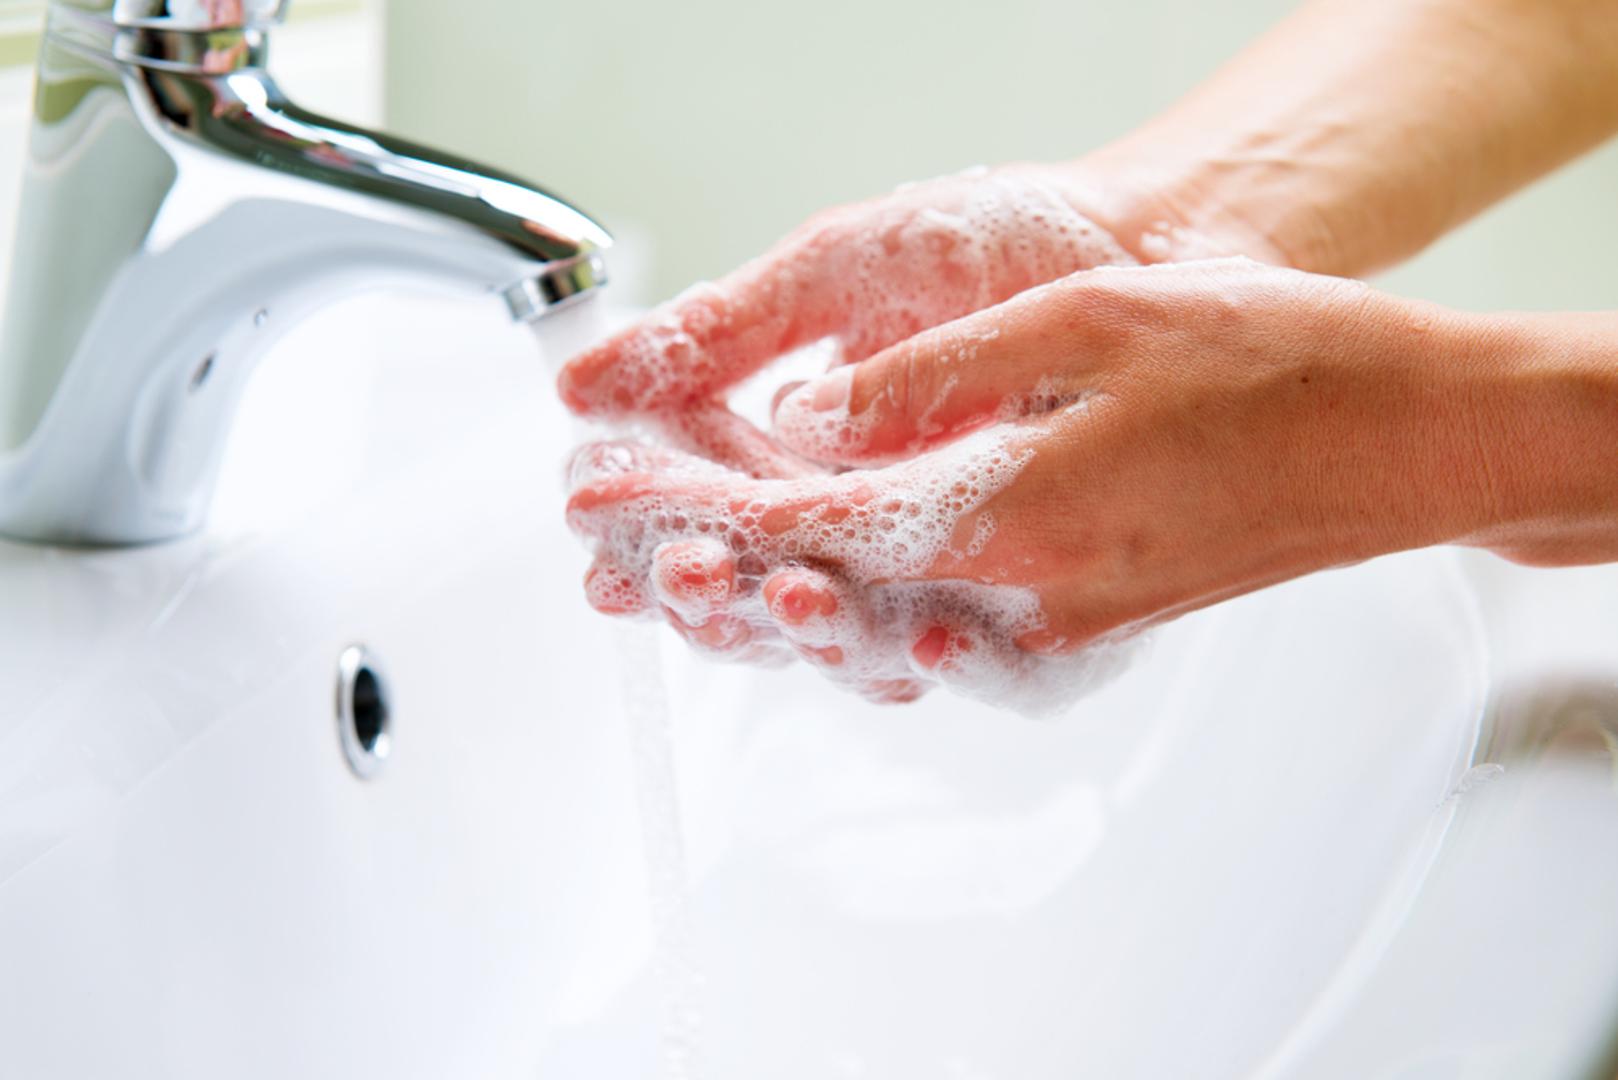 Ne perete ruke dovoljno ili pravilno? Zbog toga ste podložniji bakterijama i virusima, a pravilna higijena ruku smanjila bi broj smrtnih slučajeva uzrokovanih bolestima koje se razvijaju bakterijama prenešenih prljavim rukama. 